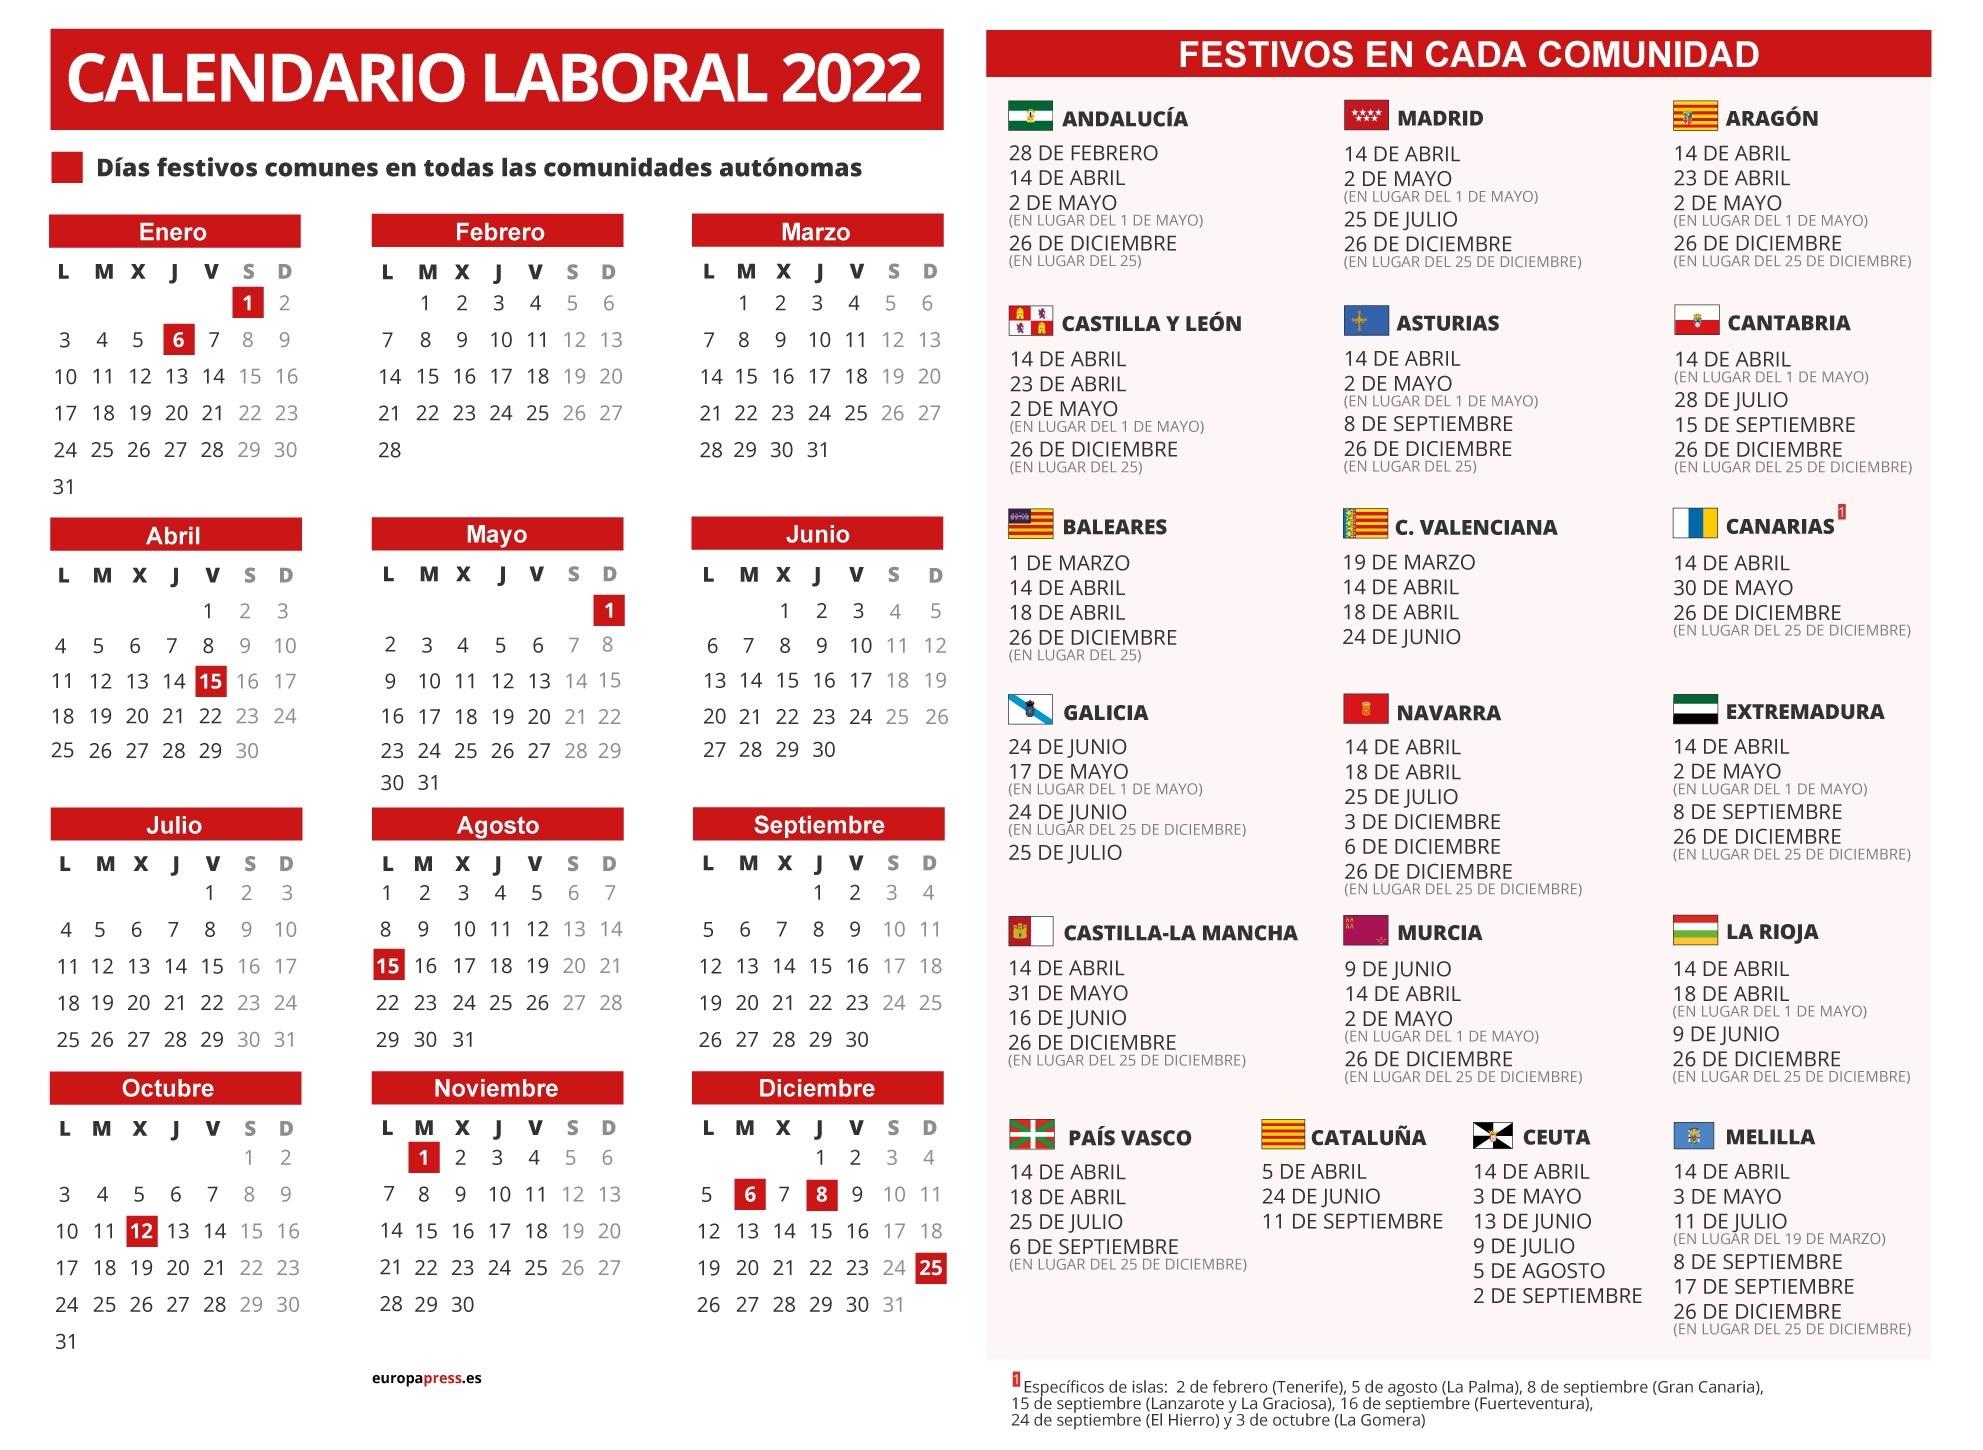 Calendario laboral 2022 por comunidades. Europa Press